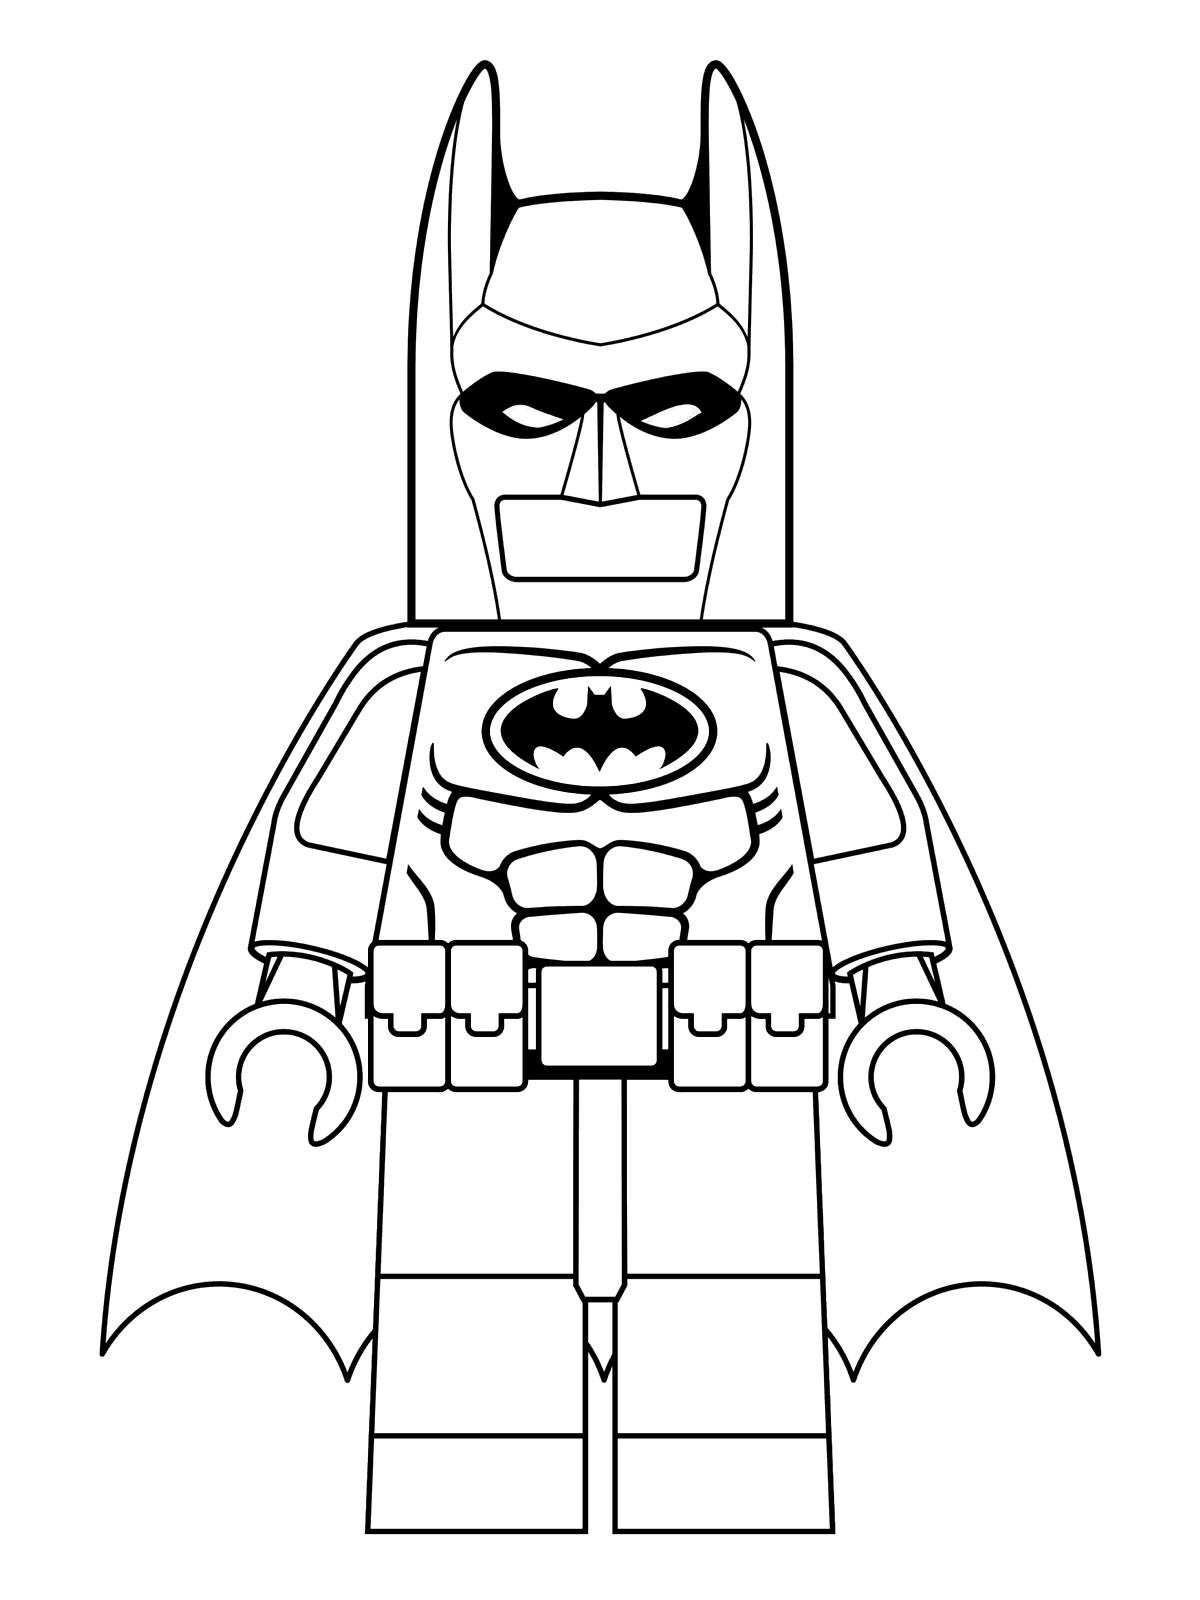 Lego Batman To Print - Lego Batman Kids Coloring Pages - Free Printable Batman Coloring Pages